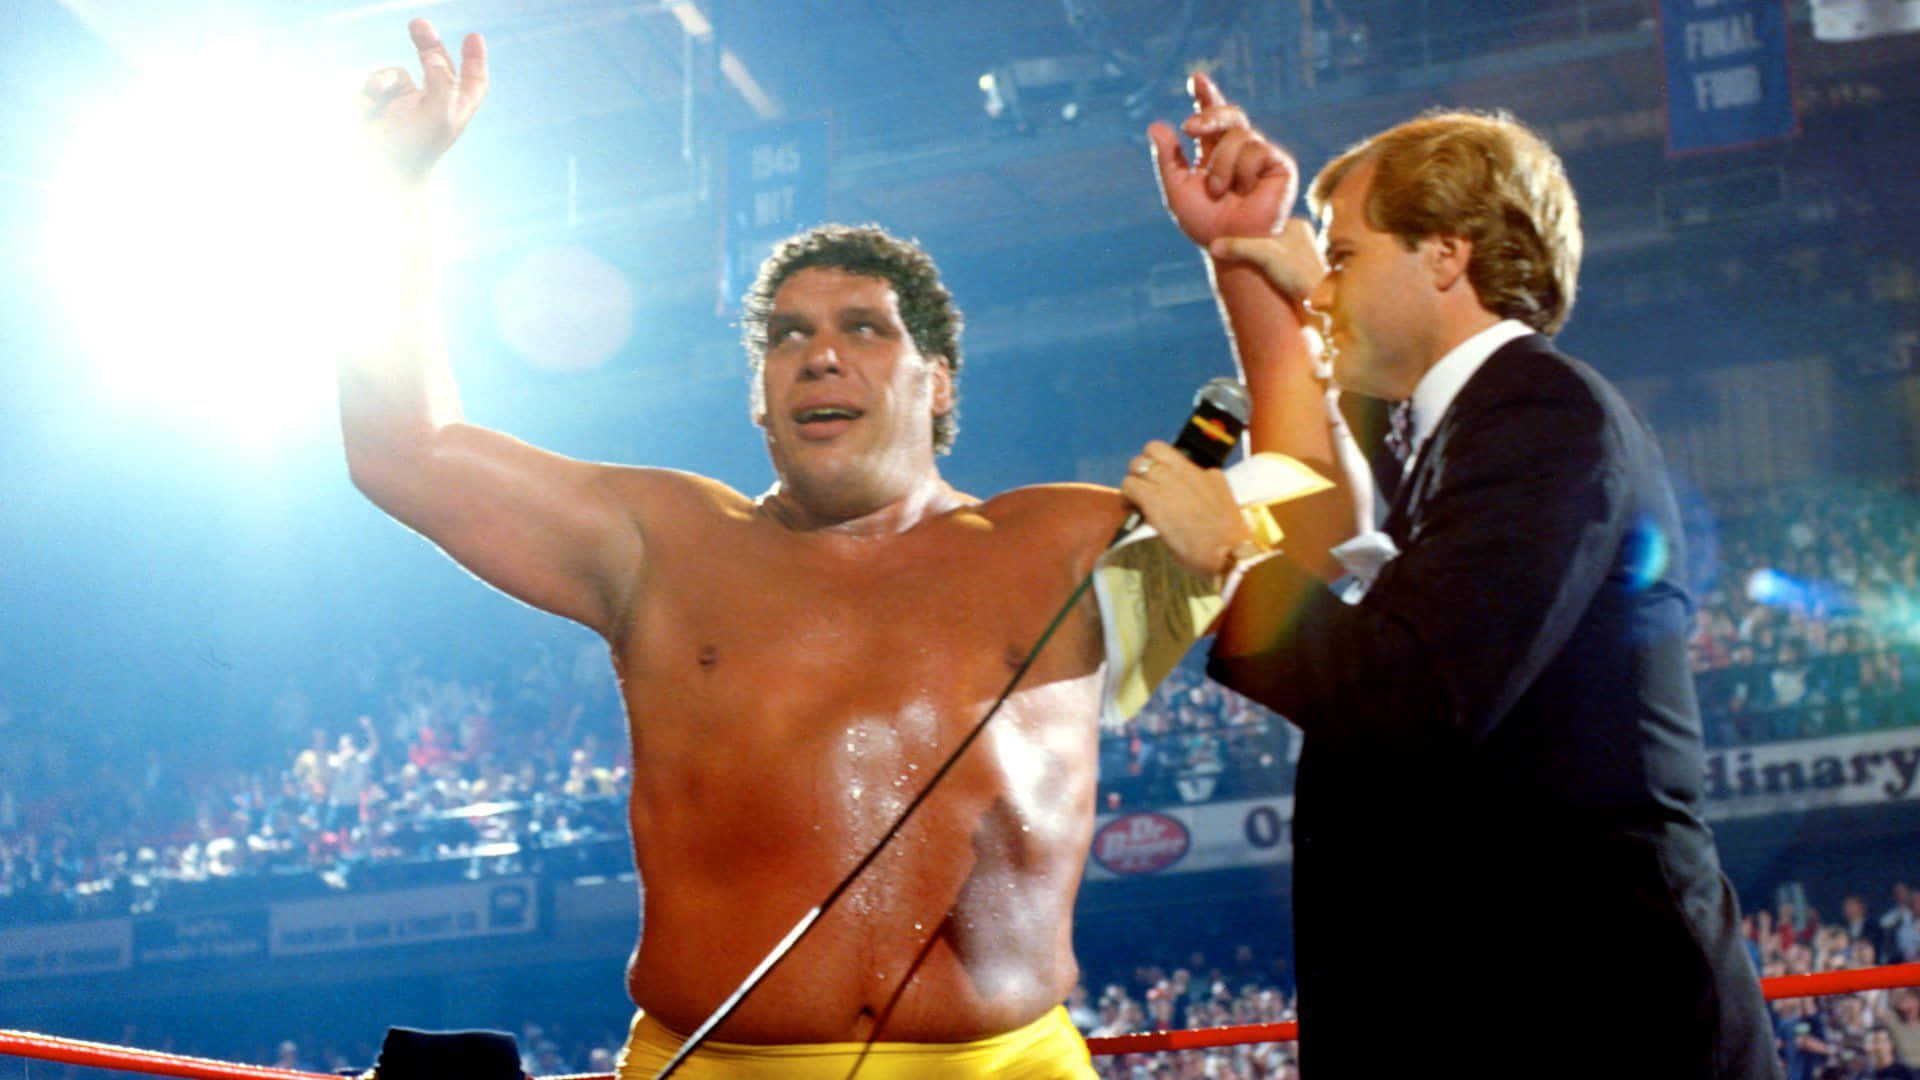 Andre The Giant WrestleMania 2 Winner Wallpaper